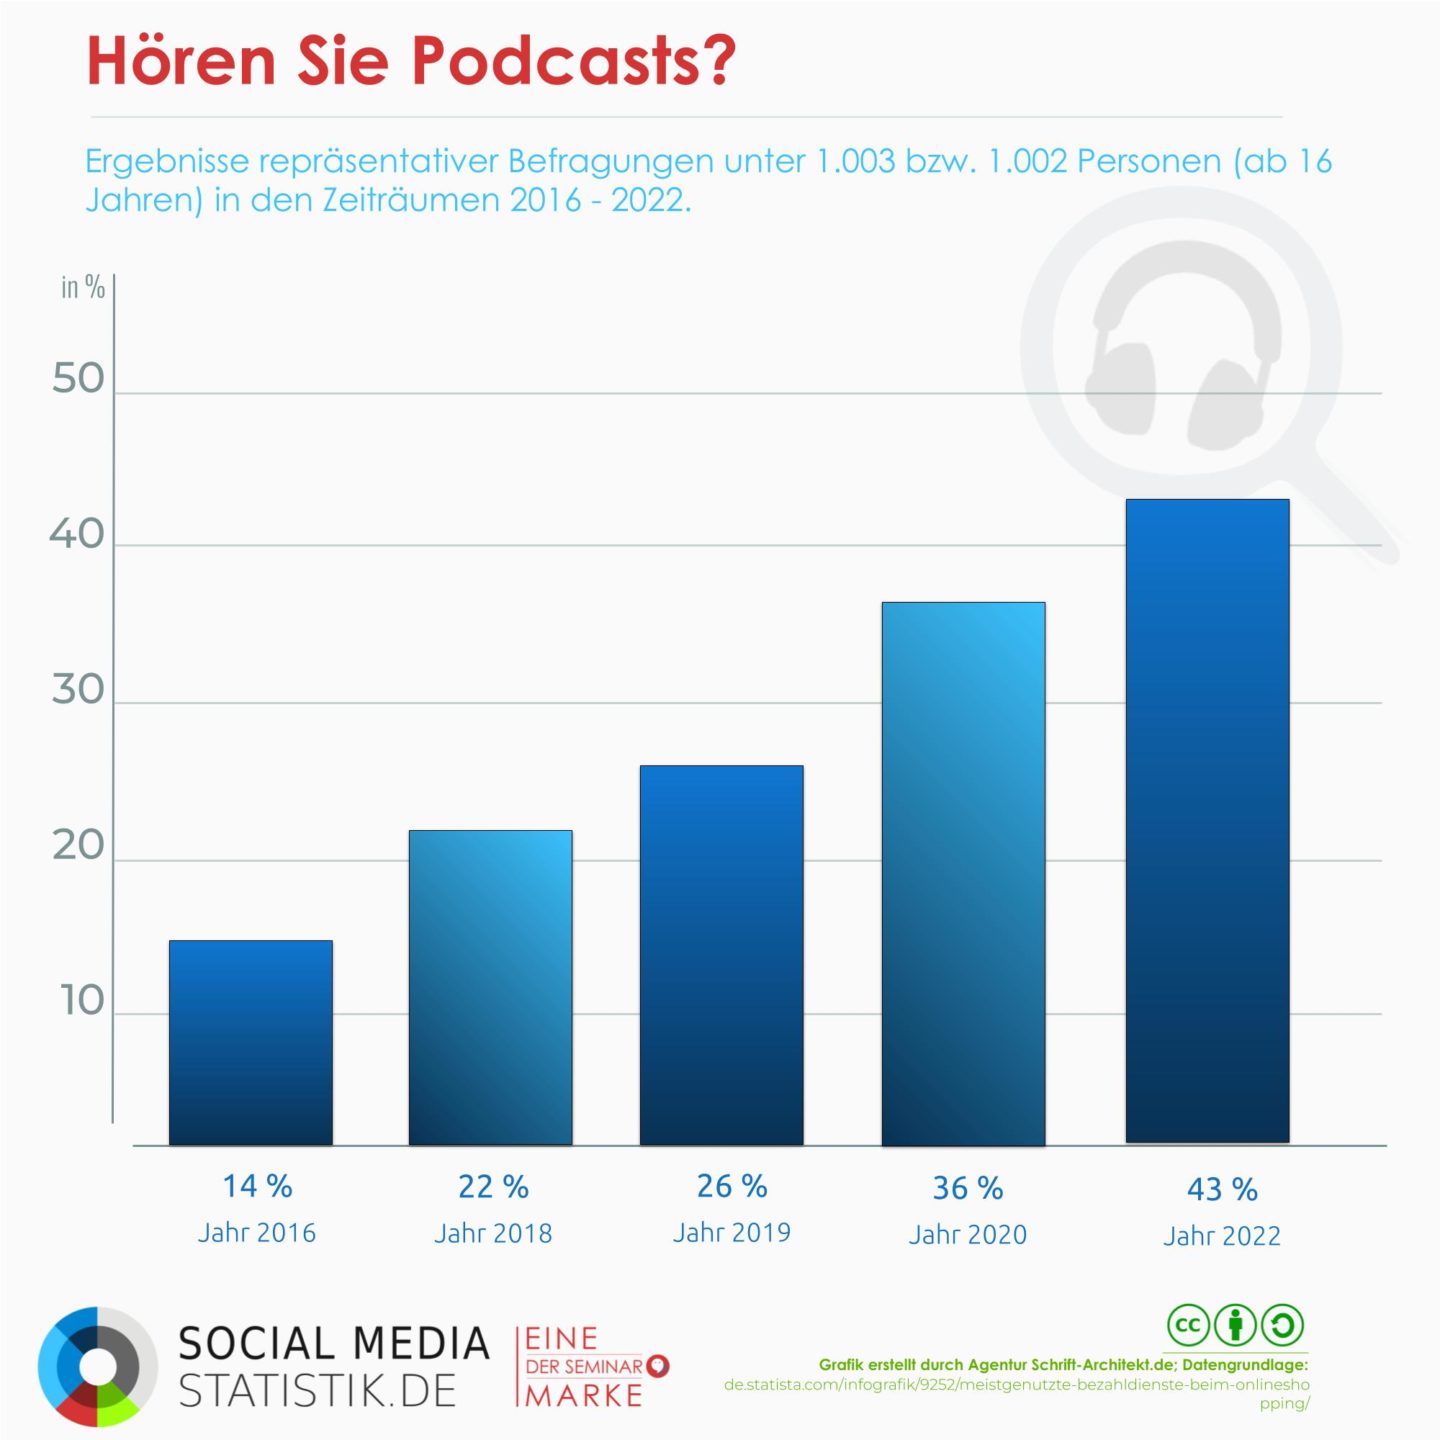 43 % der Deutschen hören 2022 Podcasts | Infografik + Podcast